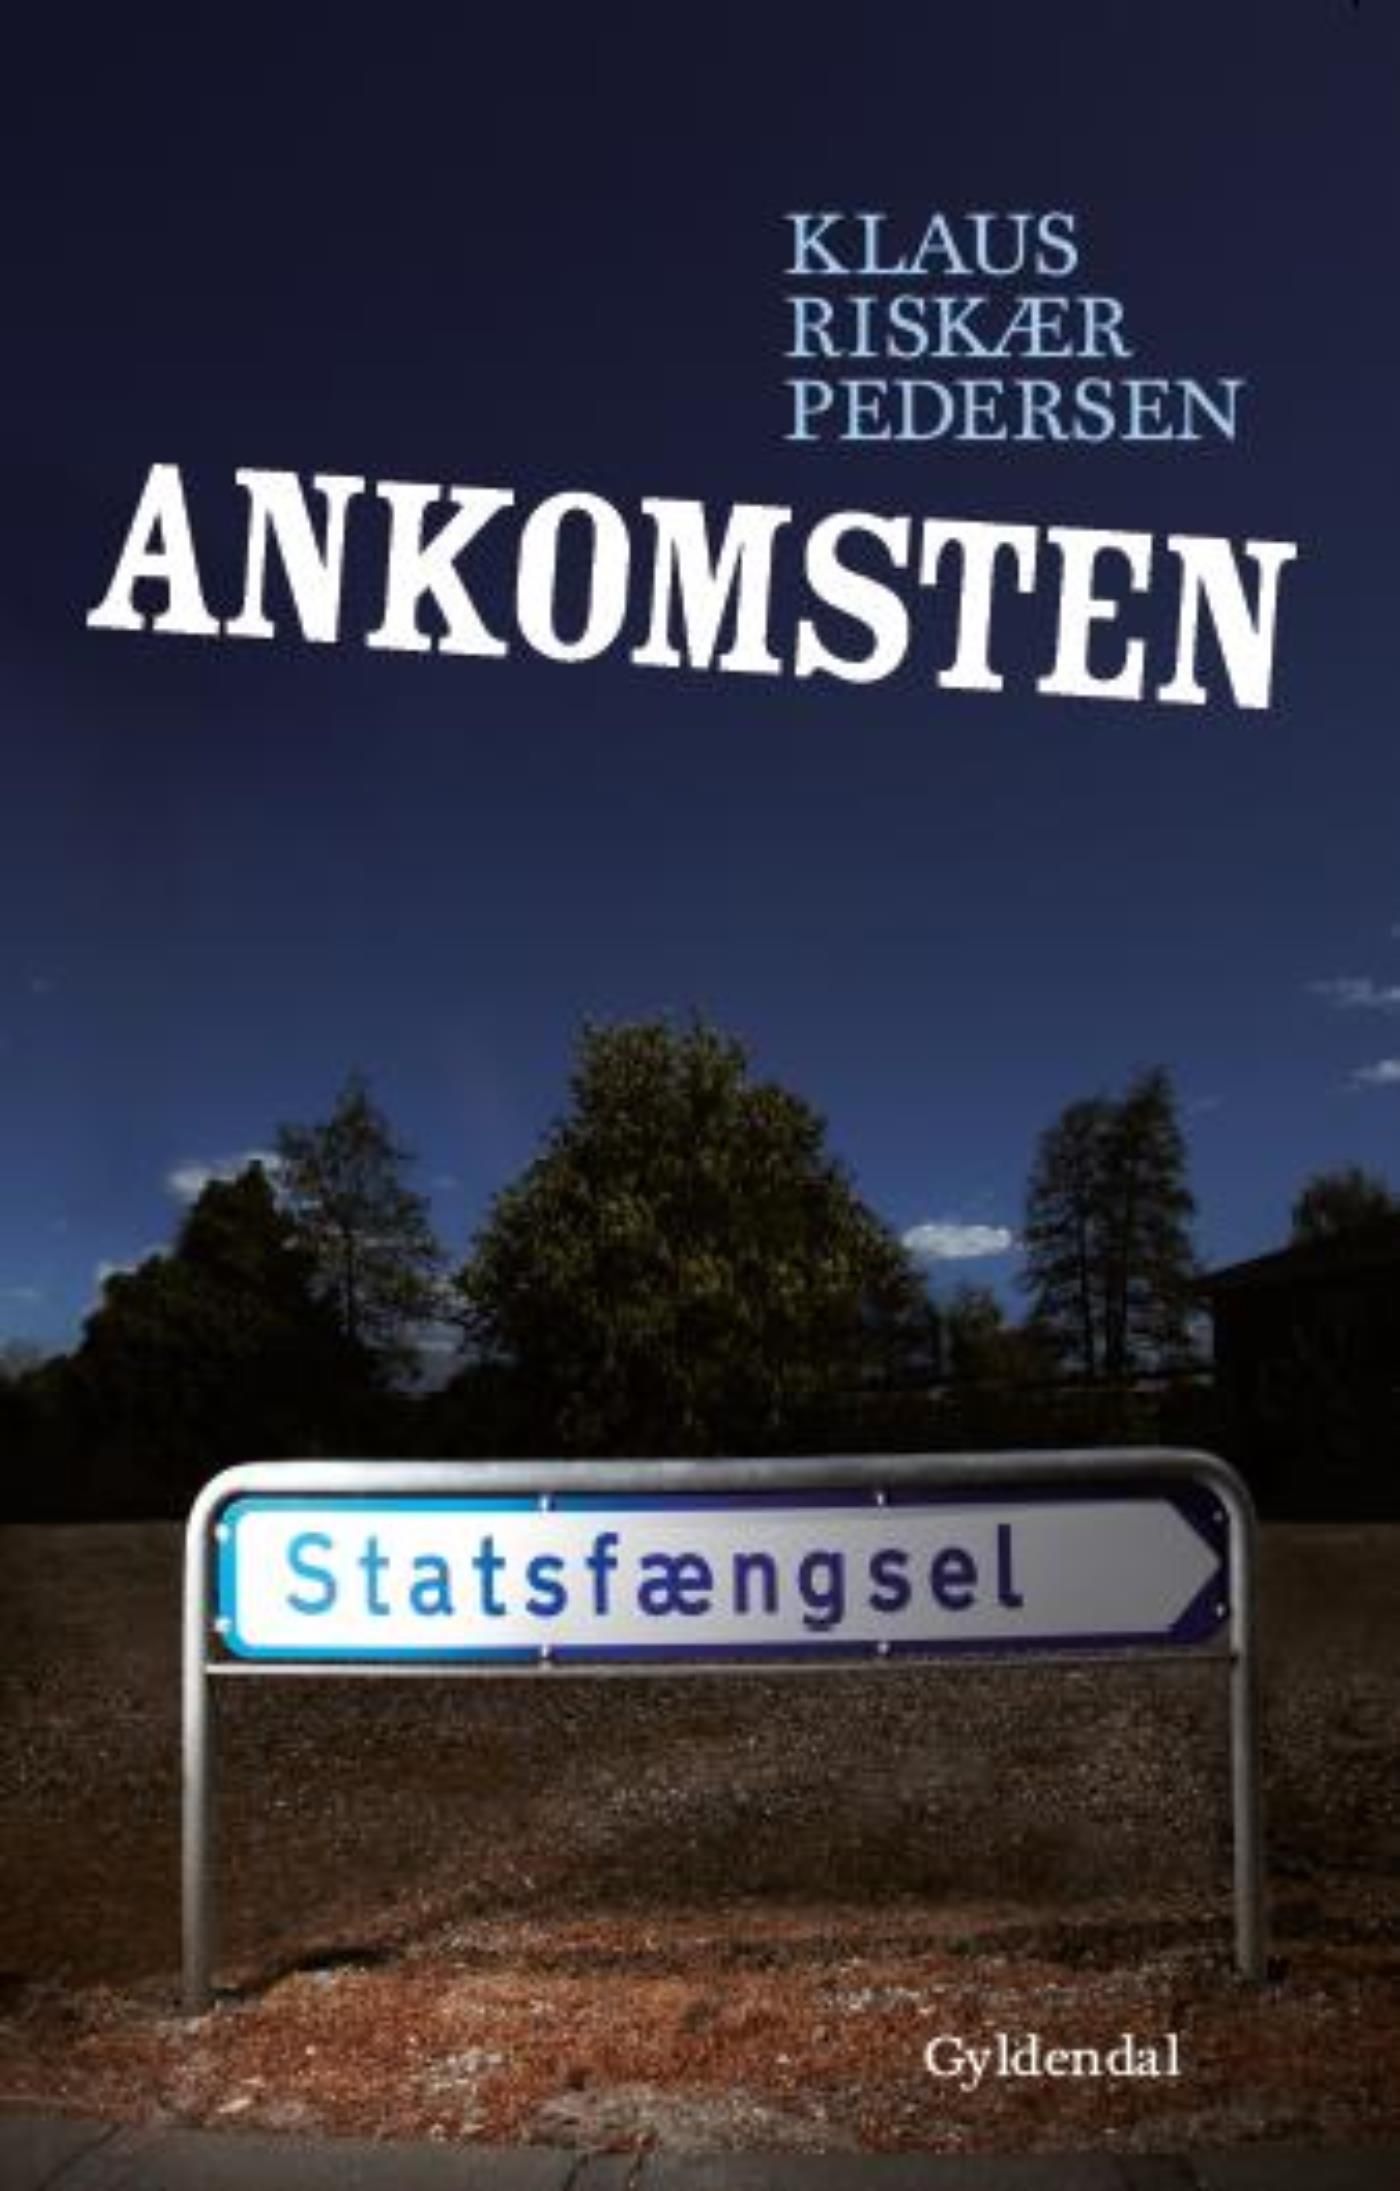 Ankomsten, e-bog af Klaus Riskær Pedersen